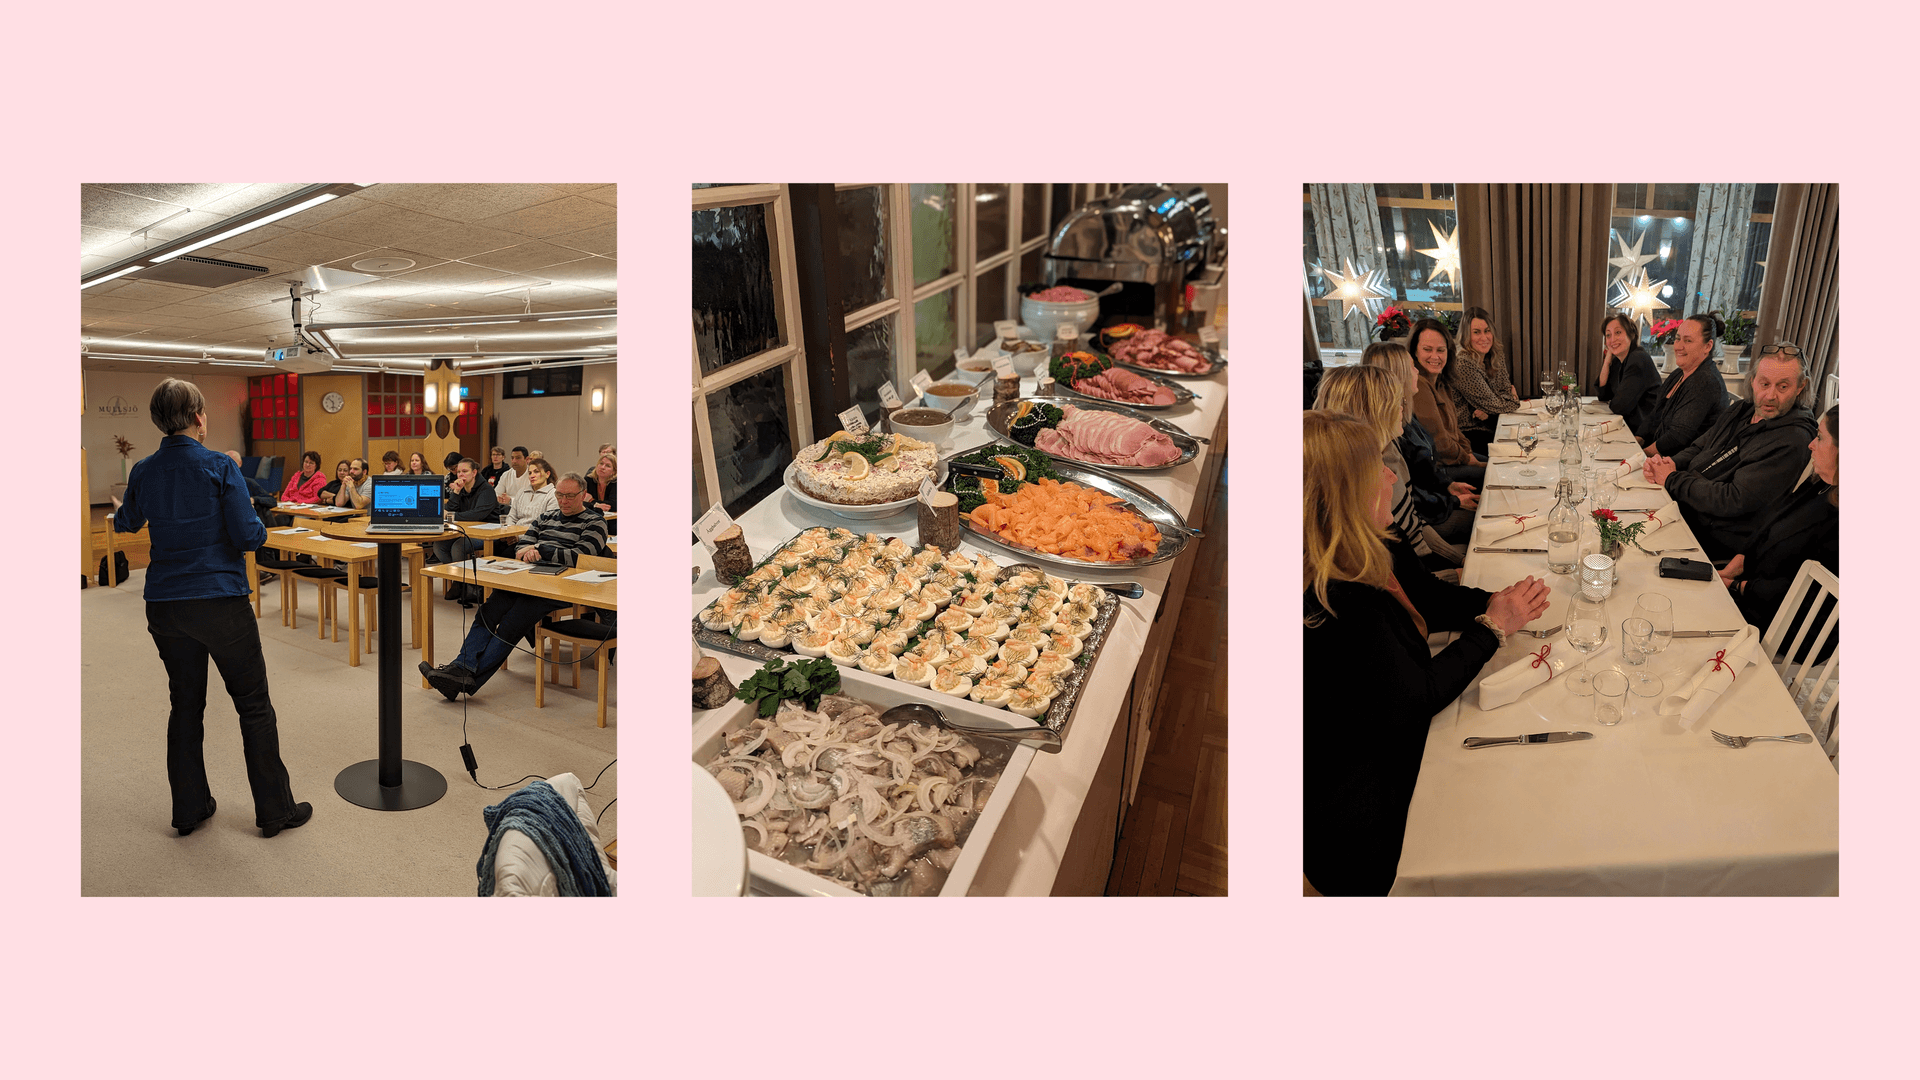 Ett bildkollage bestående av tre bilder och en rosa bakgrund. Första bilden visar en kvinna som står upp och håller i ett möte med publik. Andra bilden visar mat på julbord. Tredje bilden visar personer som sitter vid ett långbord tillsammans och pratar med varandra.